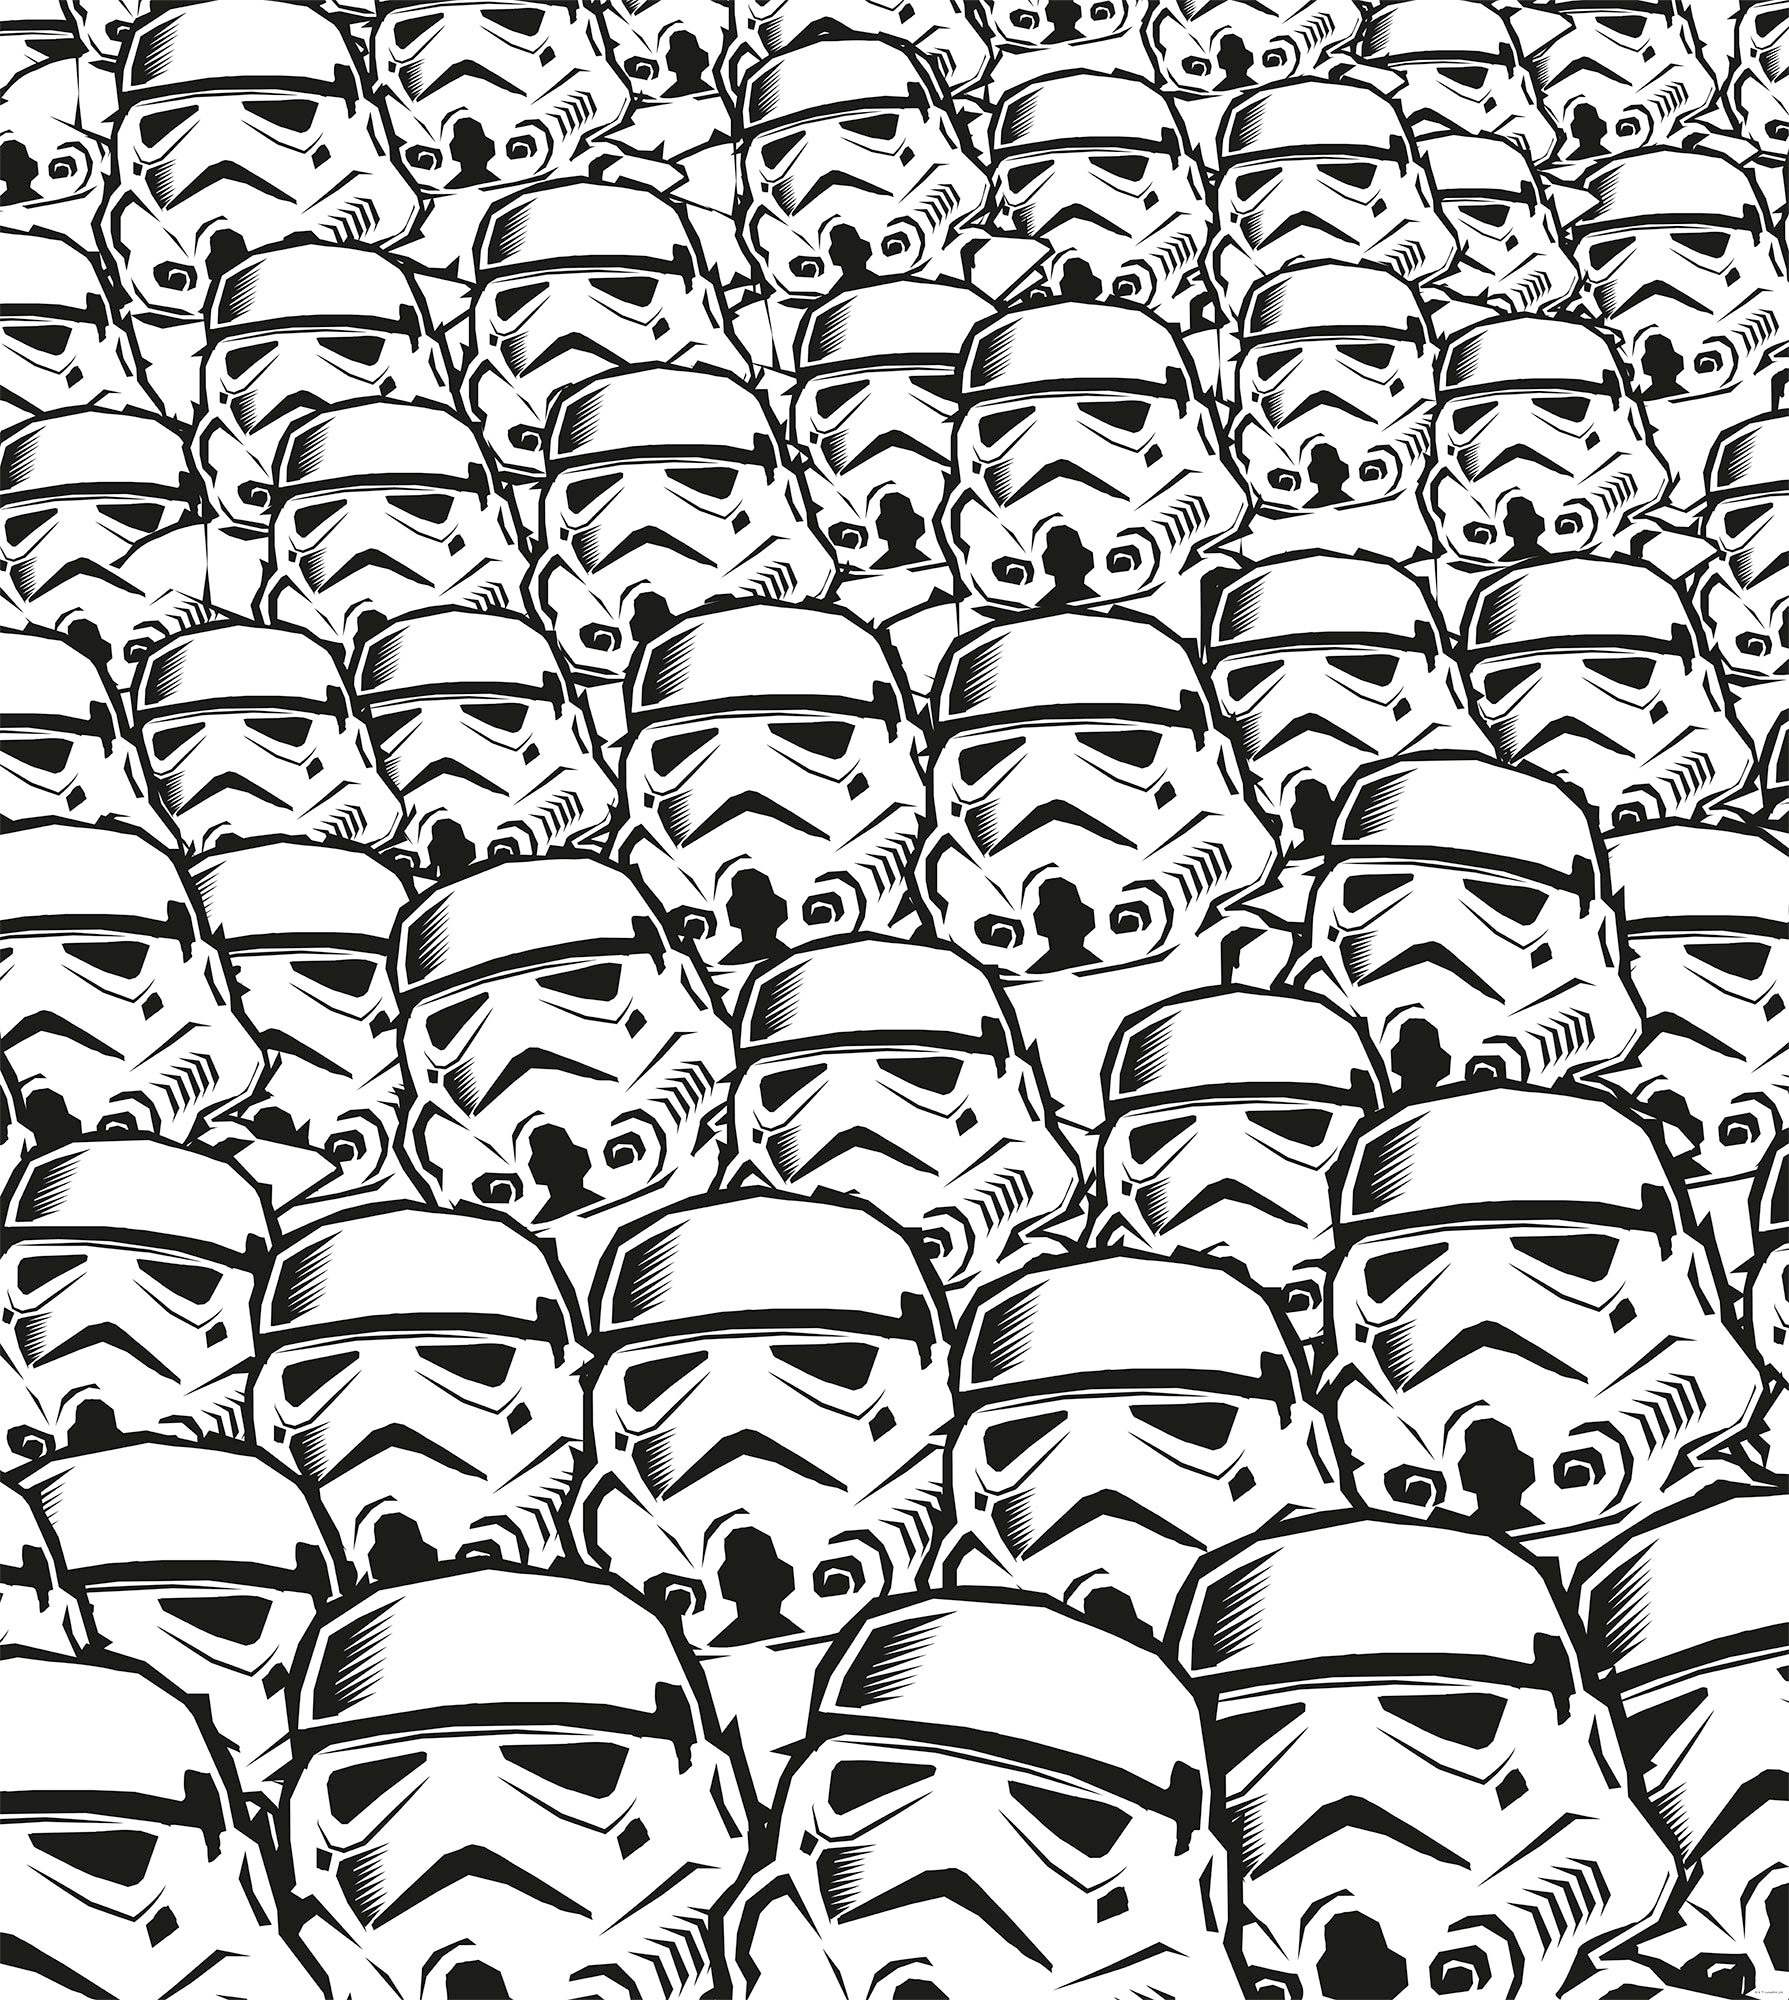 Komar Vliestapete "Star Wars Stormtrooper Swarm", 250x280 cm (Breite x Höhe)